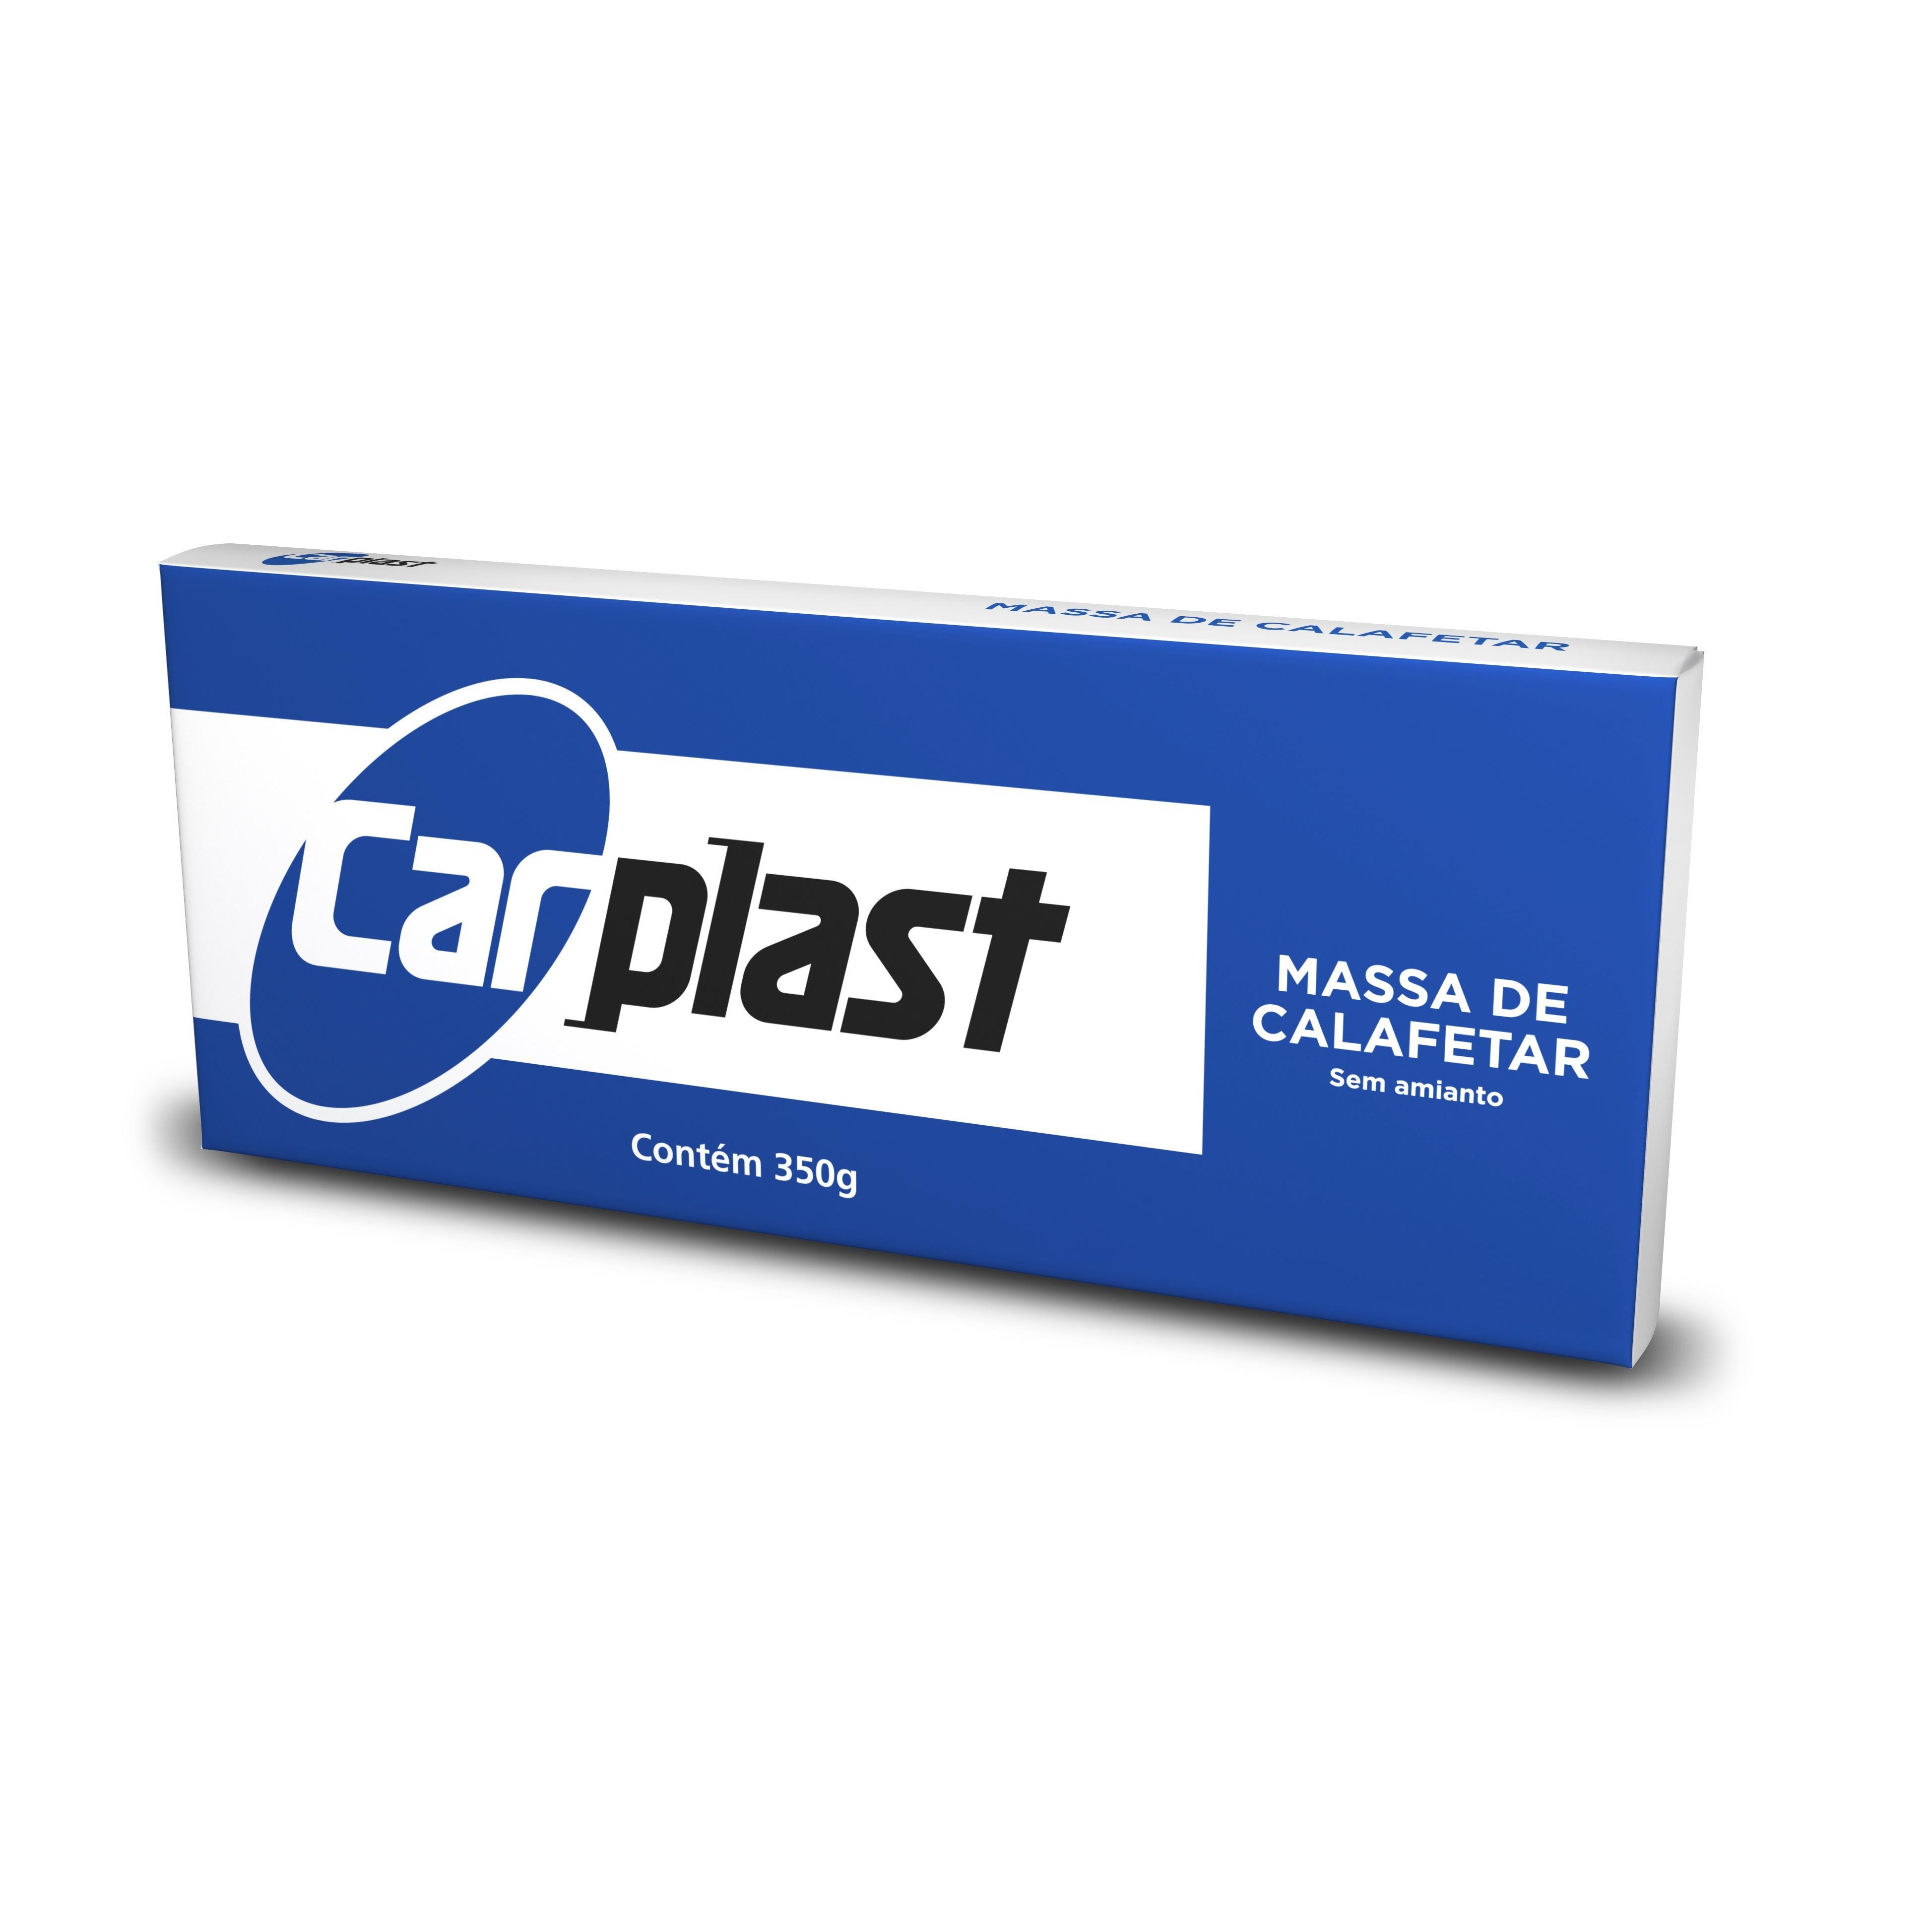 MASSA CALAFETAR PRETA 350G - CARPLAST